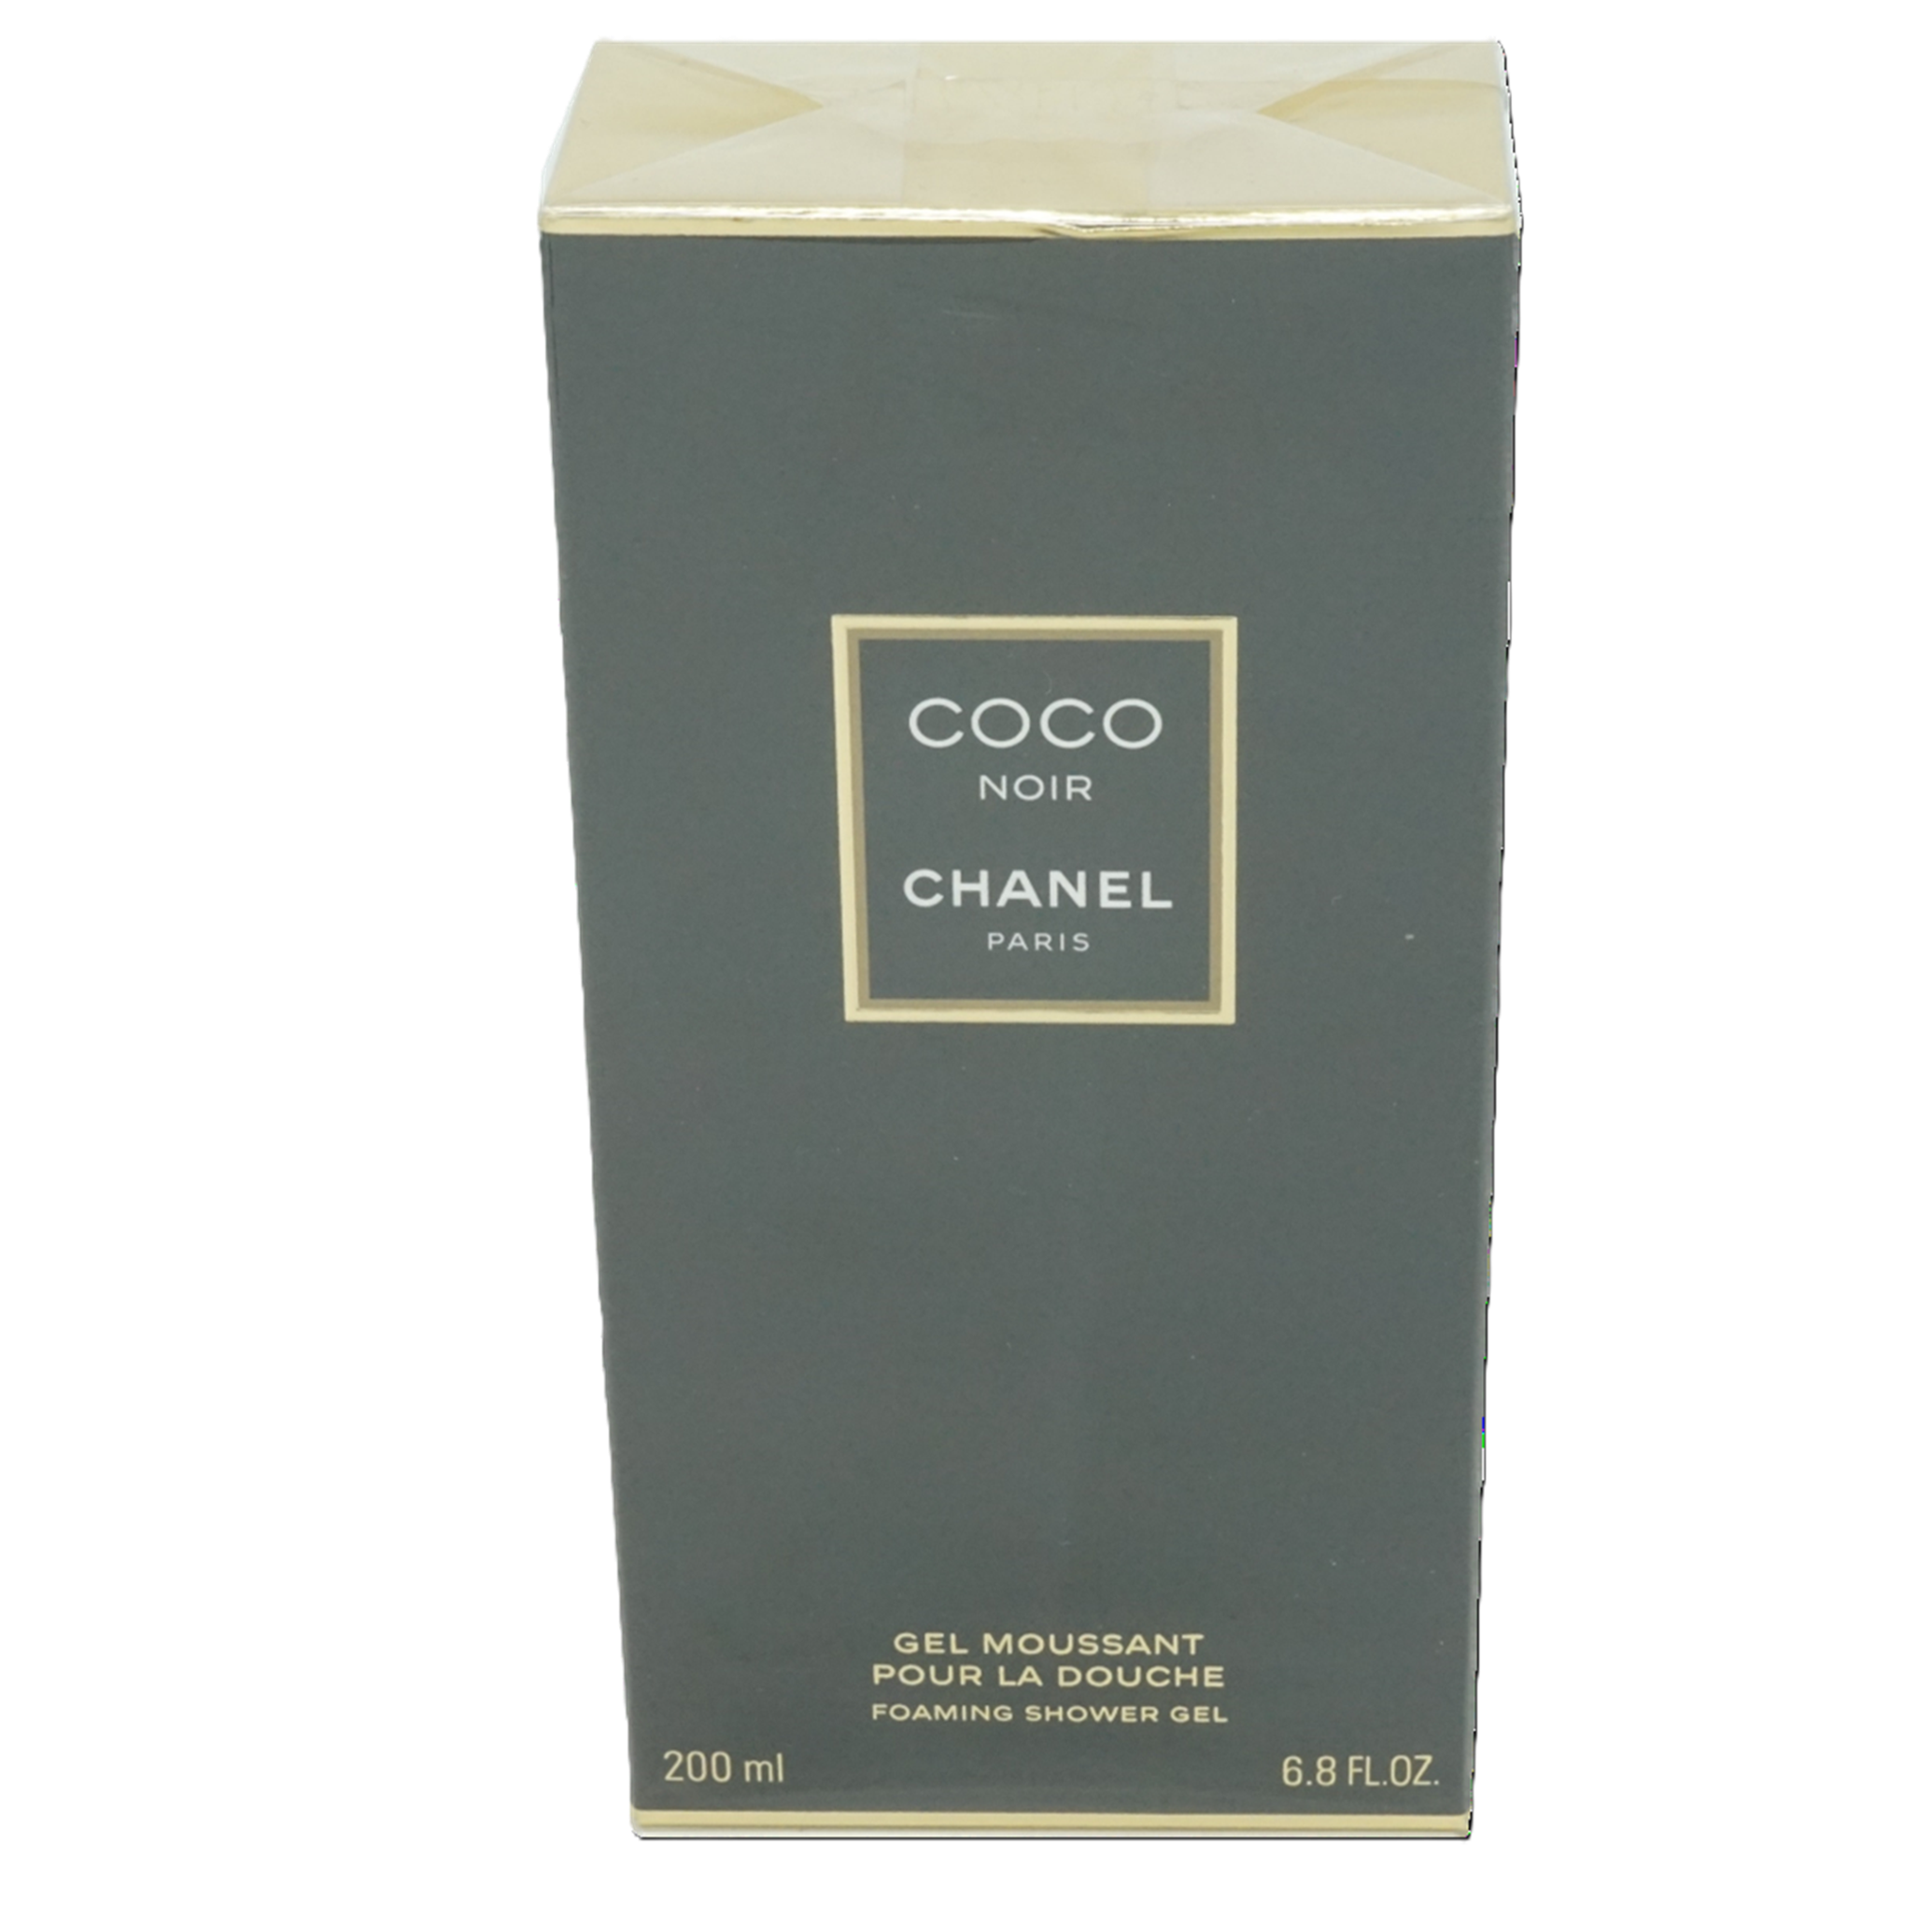 Chanel Coco Noir Foaming Shower Gel 200 ml